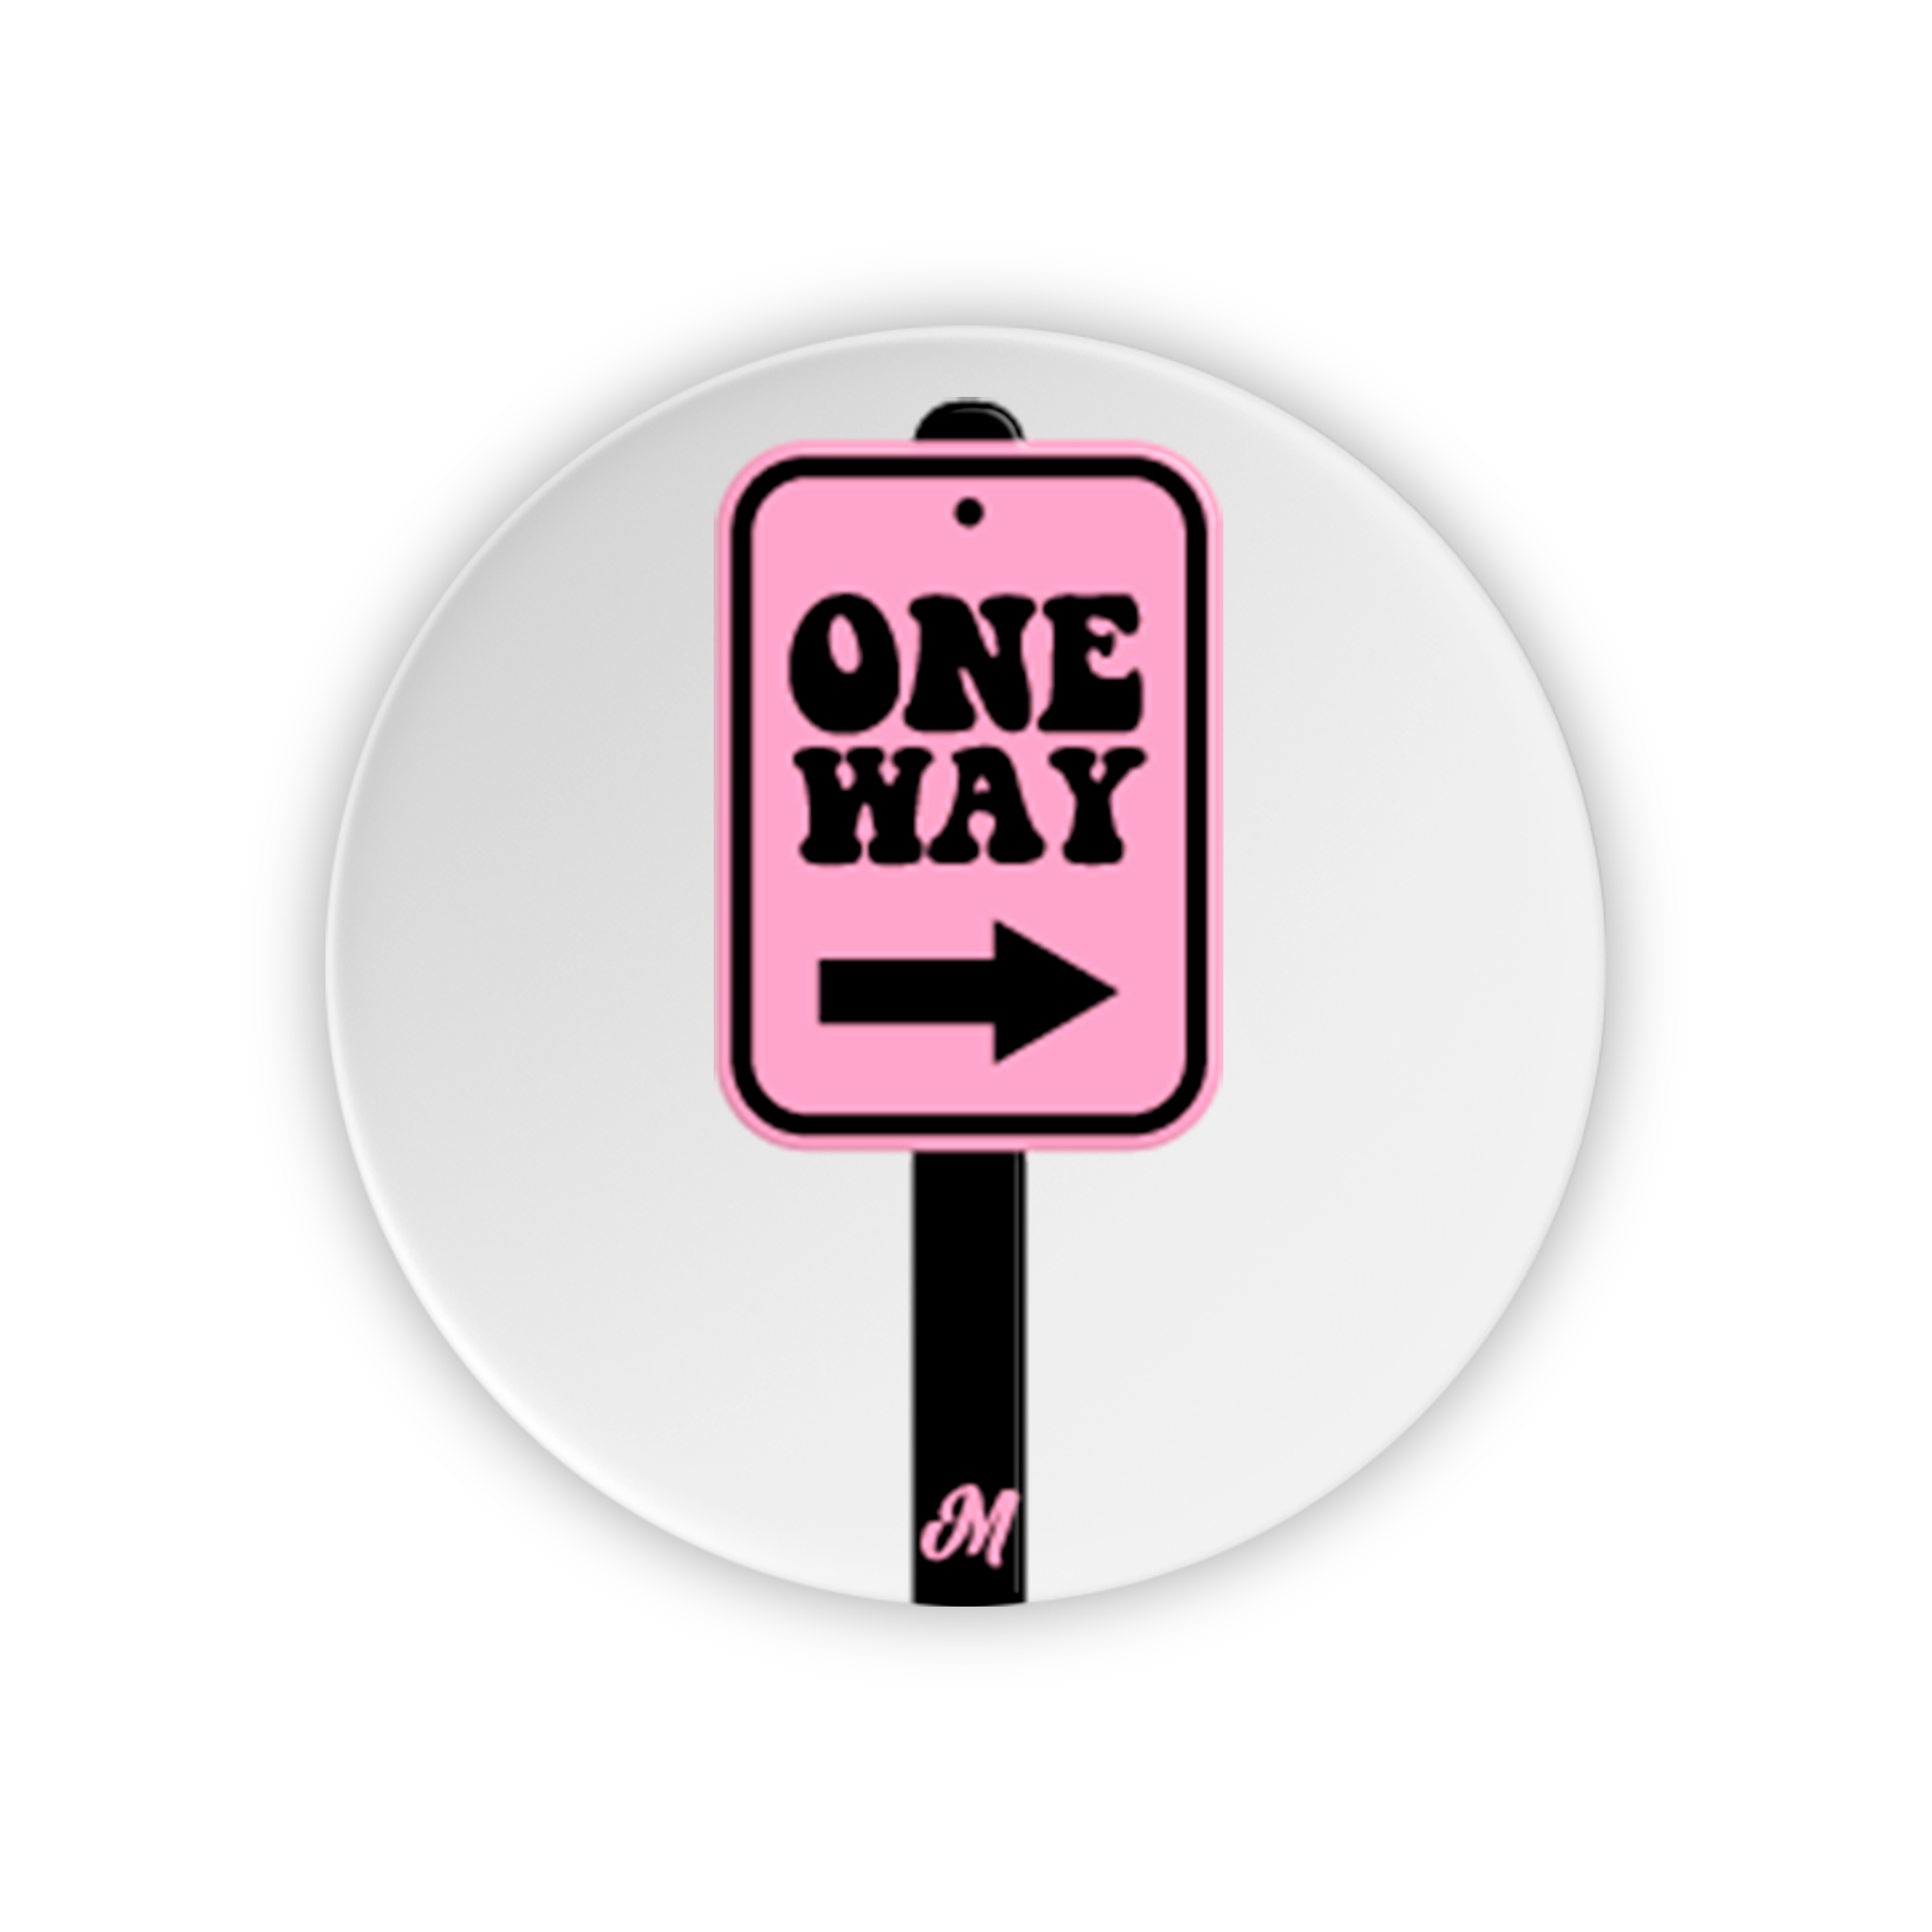 One Way  Phone holder - Mandala Cases